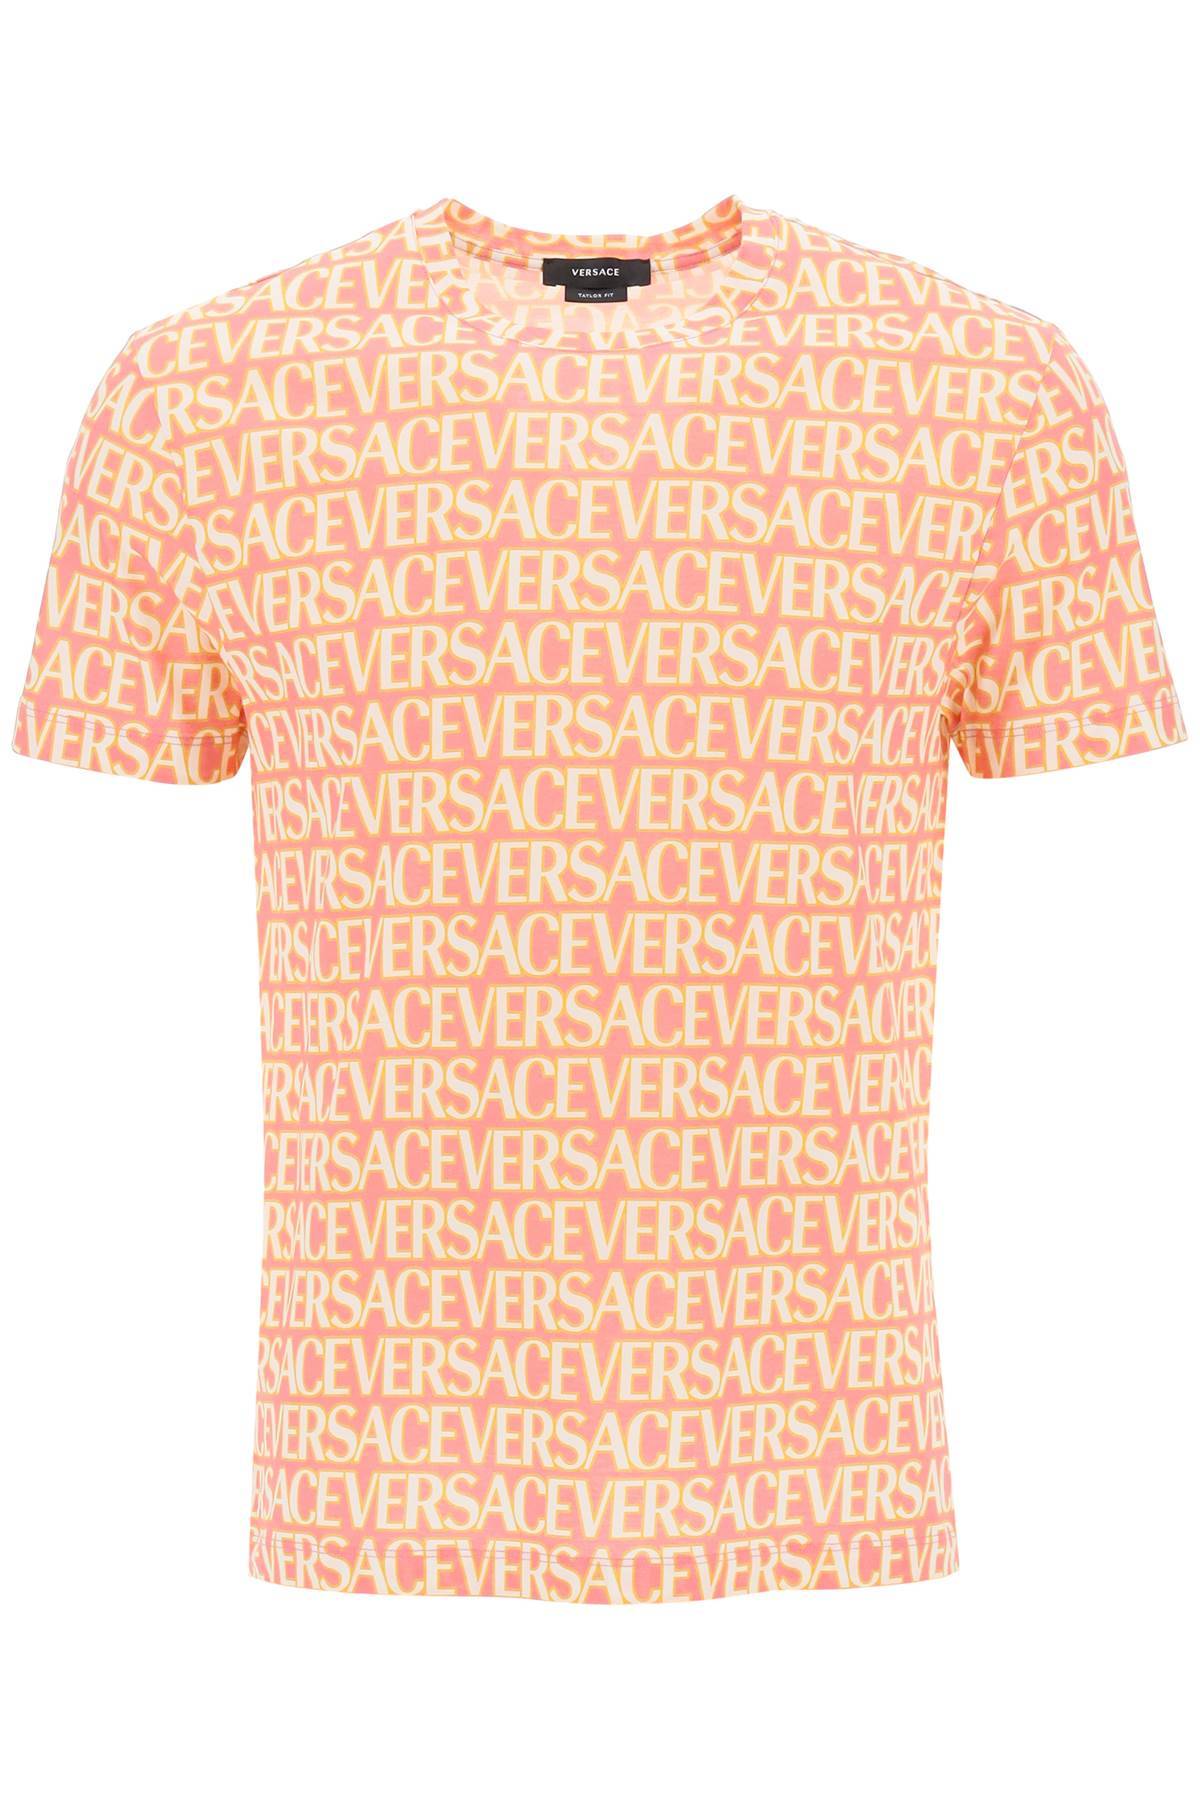 Versace VERSACE versace allover t-shirt